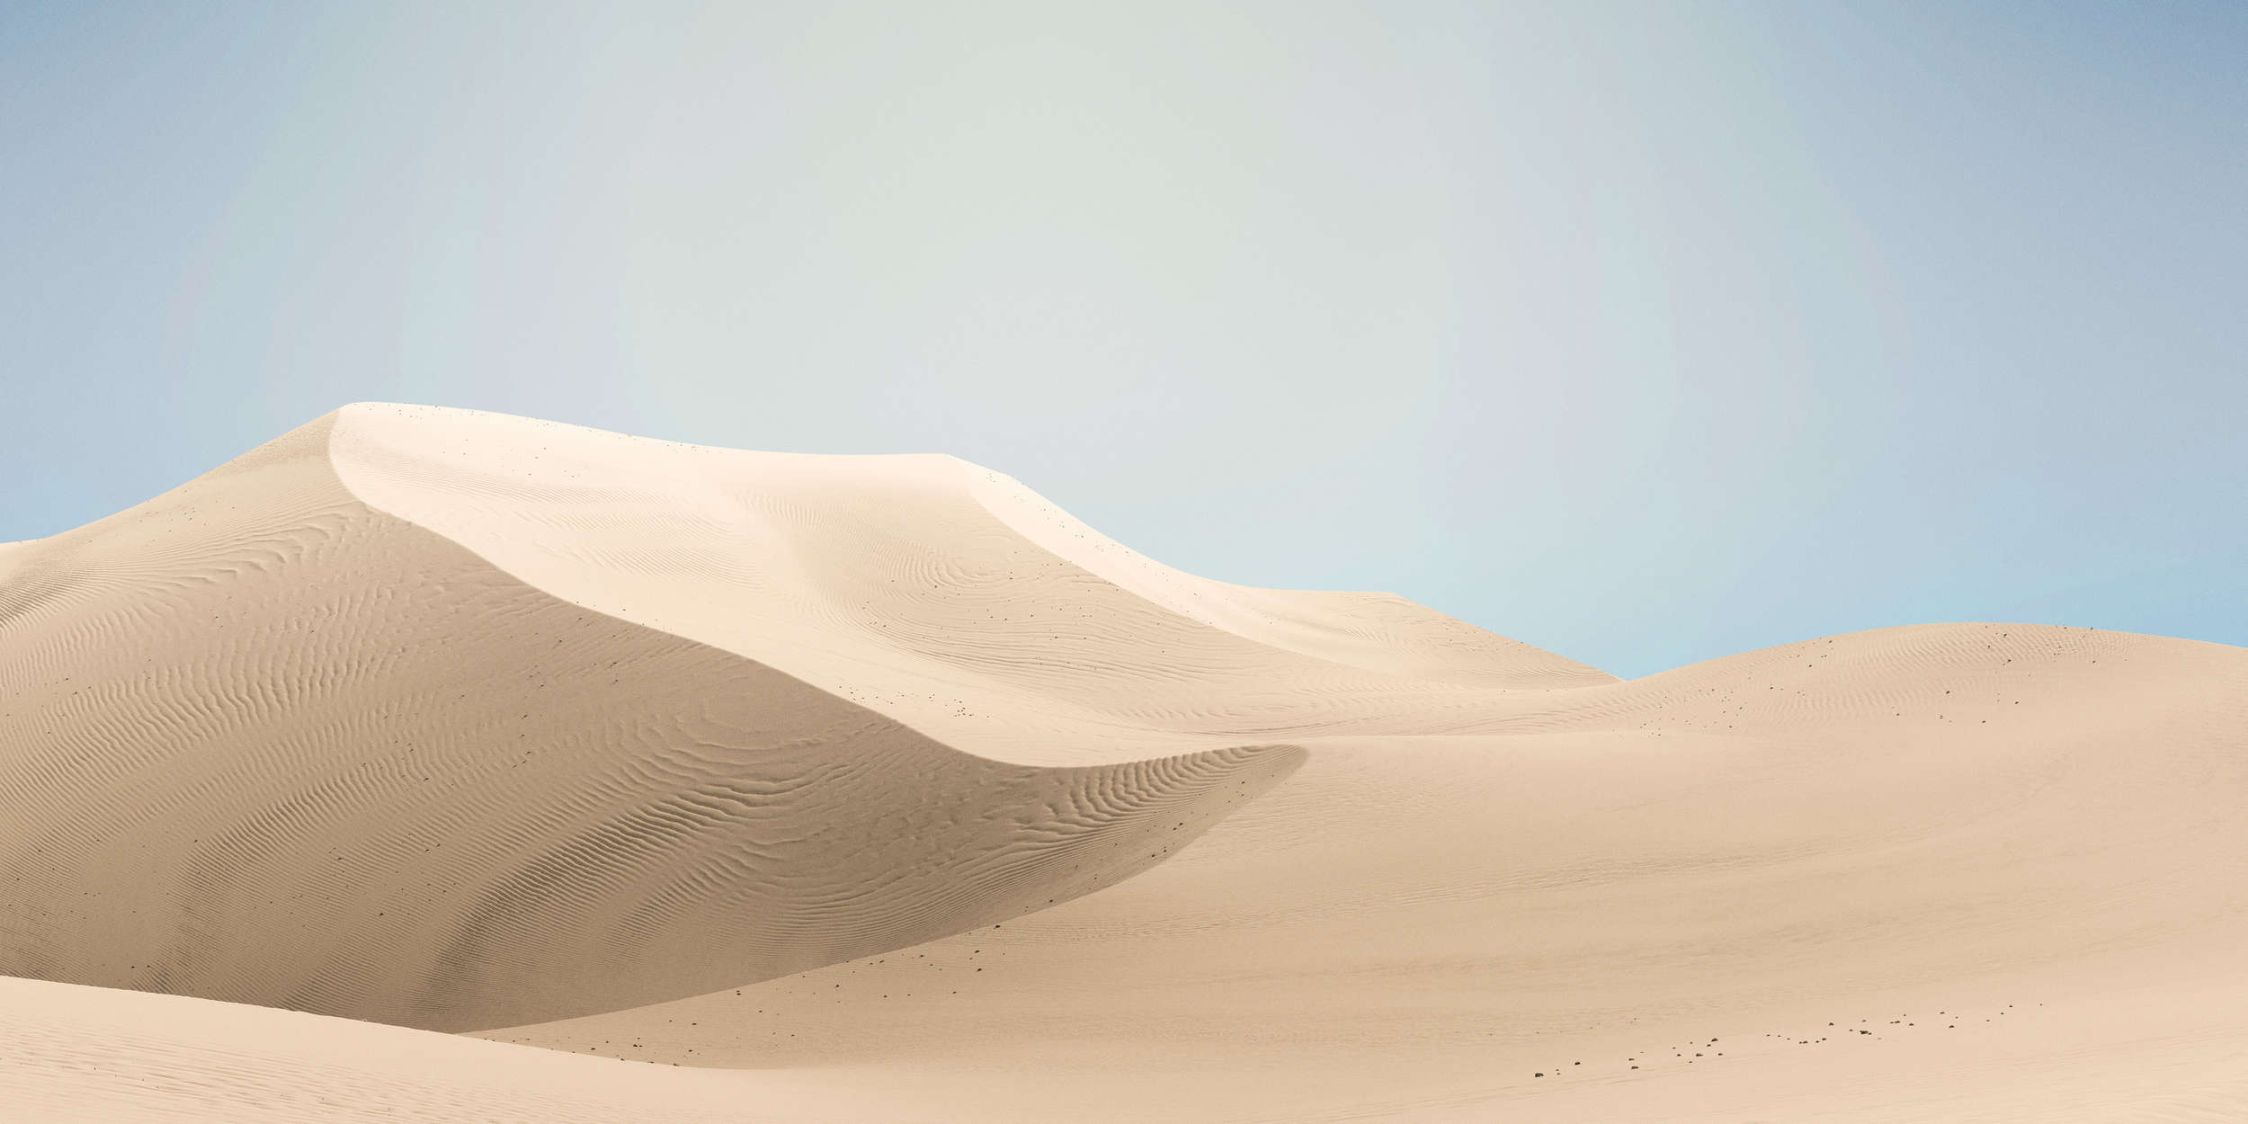             Fotomurali »dune« - Paesaggio desertico dai colori pastello - Materiali non tessuto leggermente strutturato
        